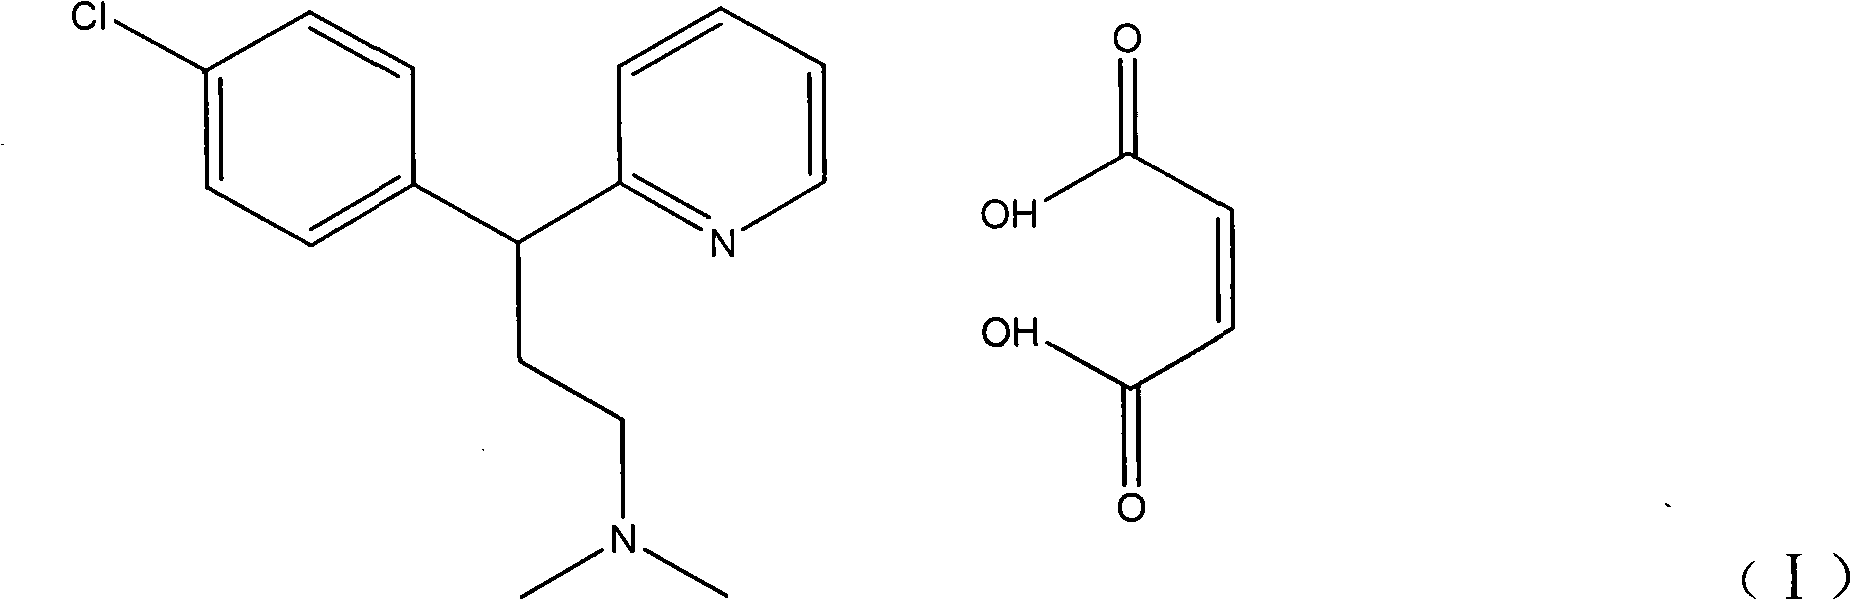 Method for detecting chlorpheniramine maleate